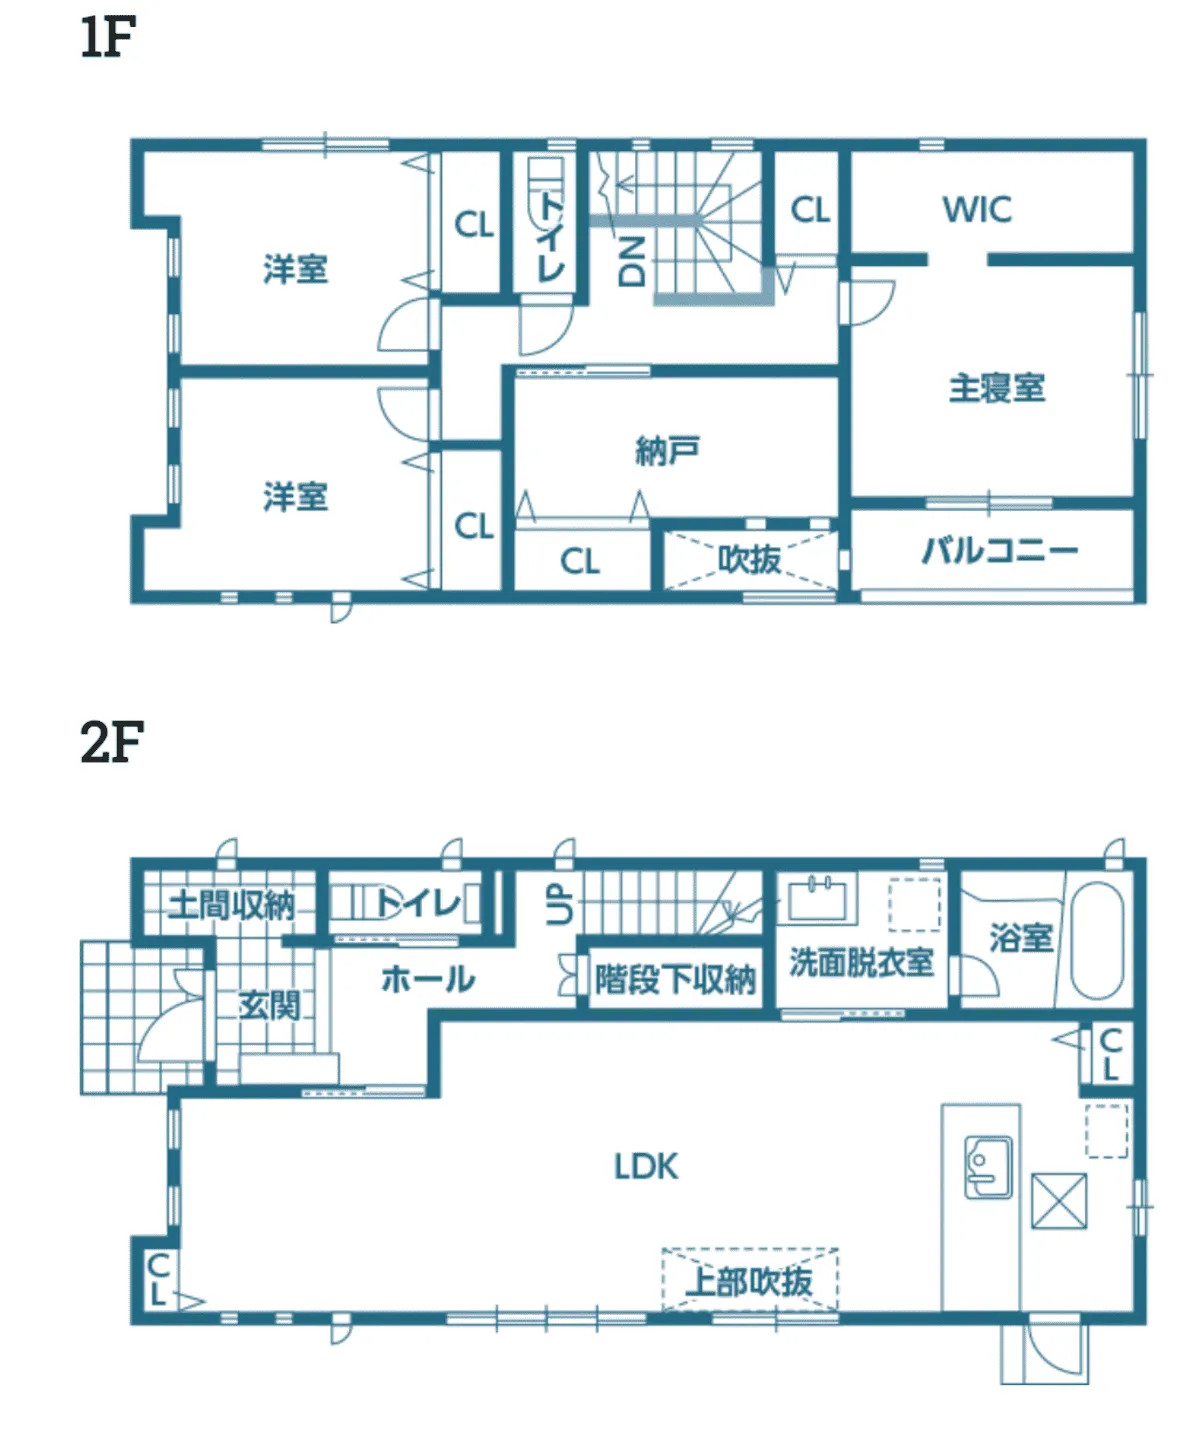 1-3-4.階段下やキッチン内の空間を有効活用